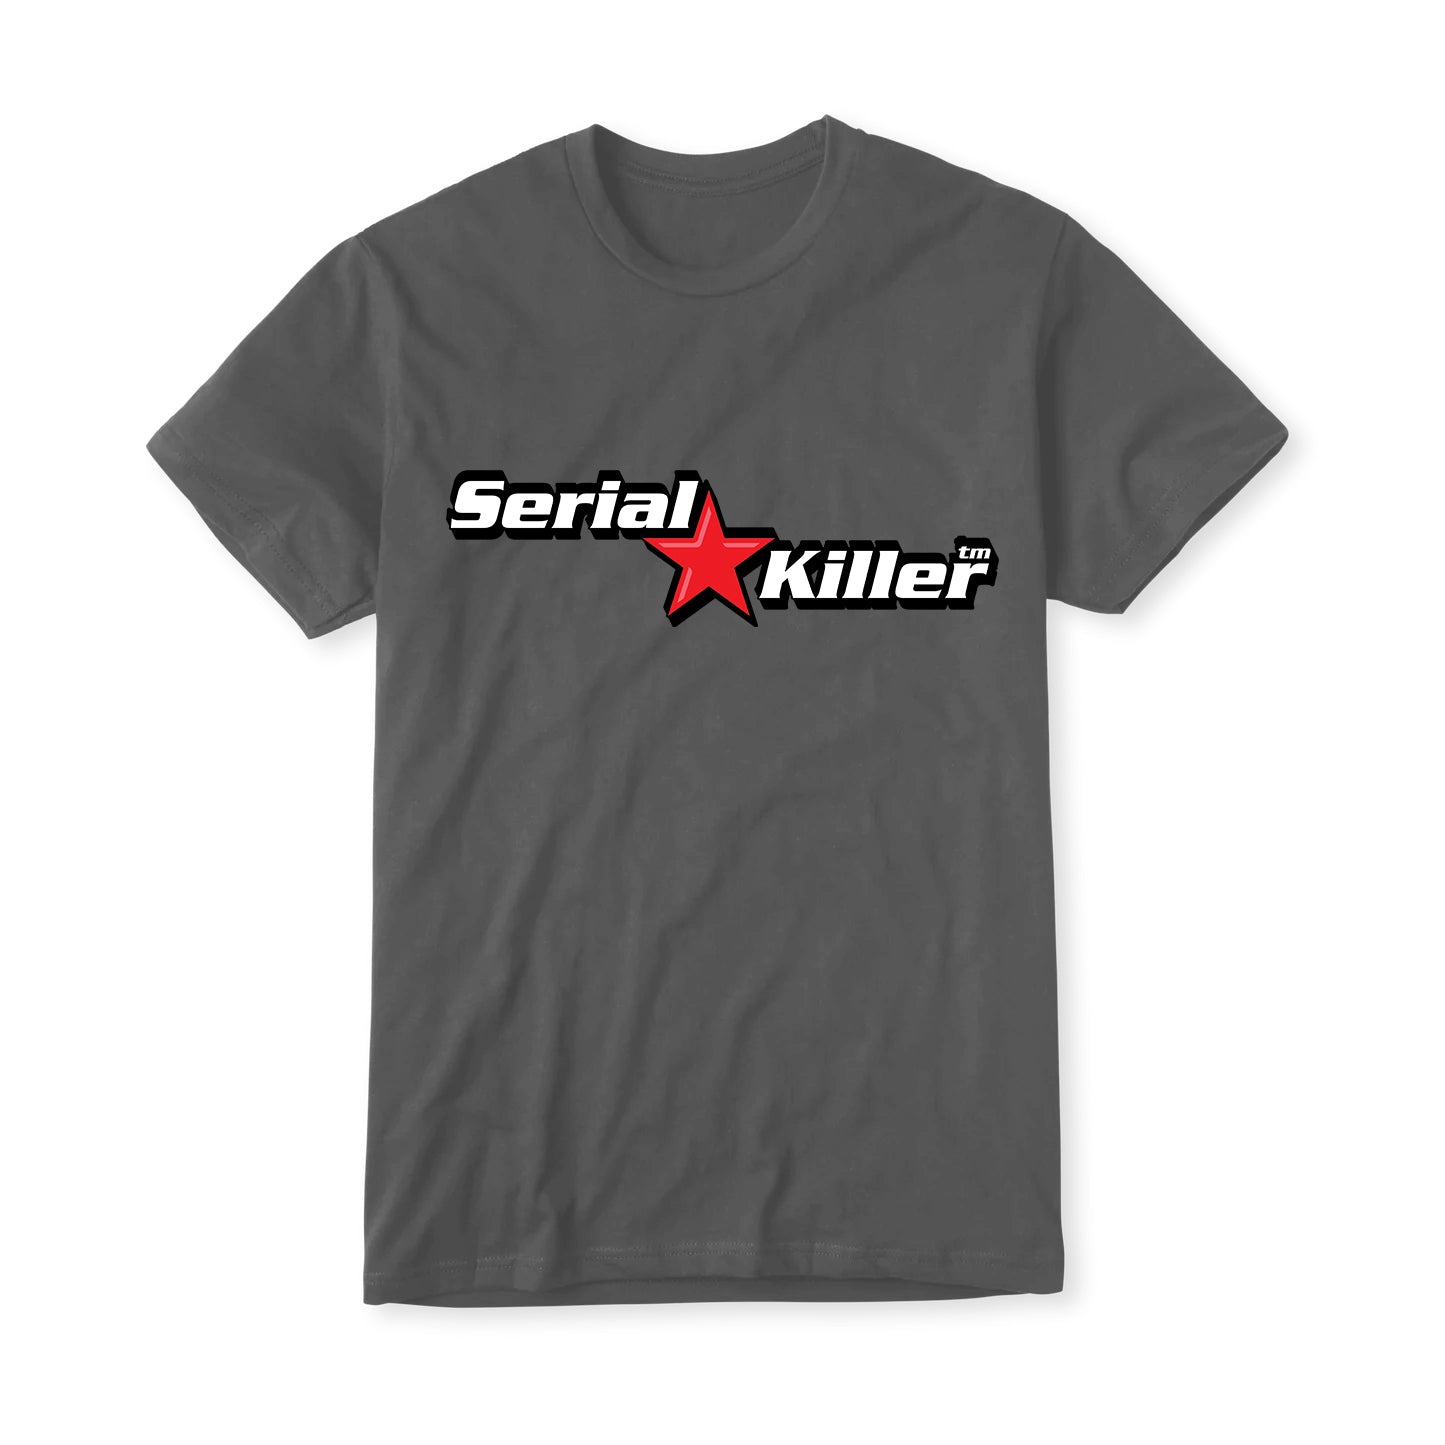 Serial Star Killer Men's Tshirt